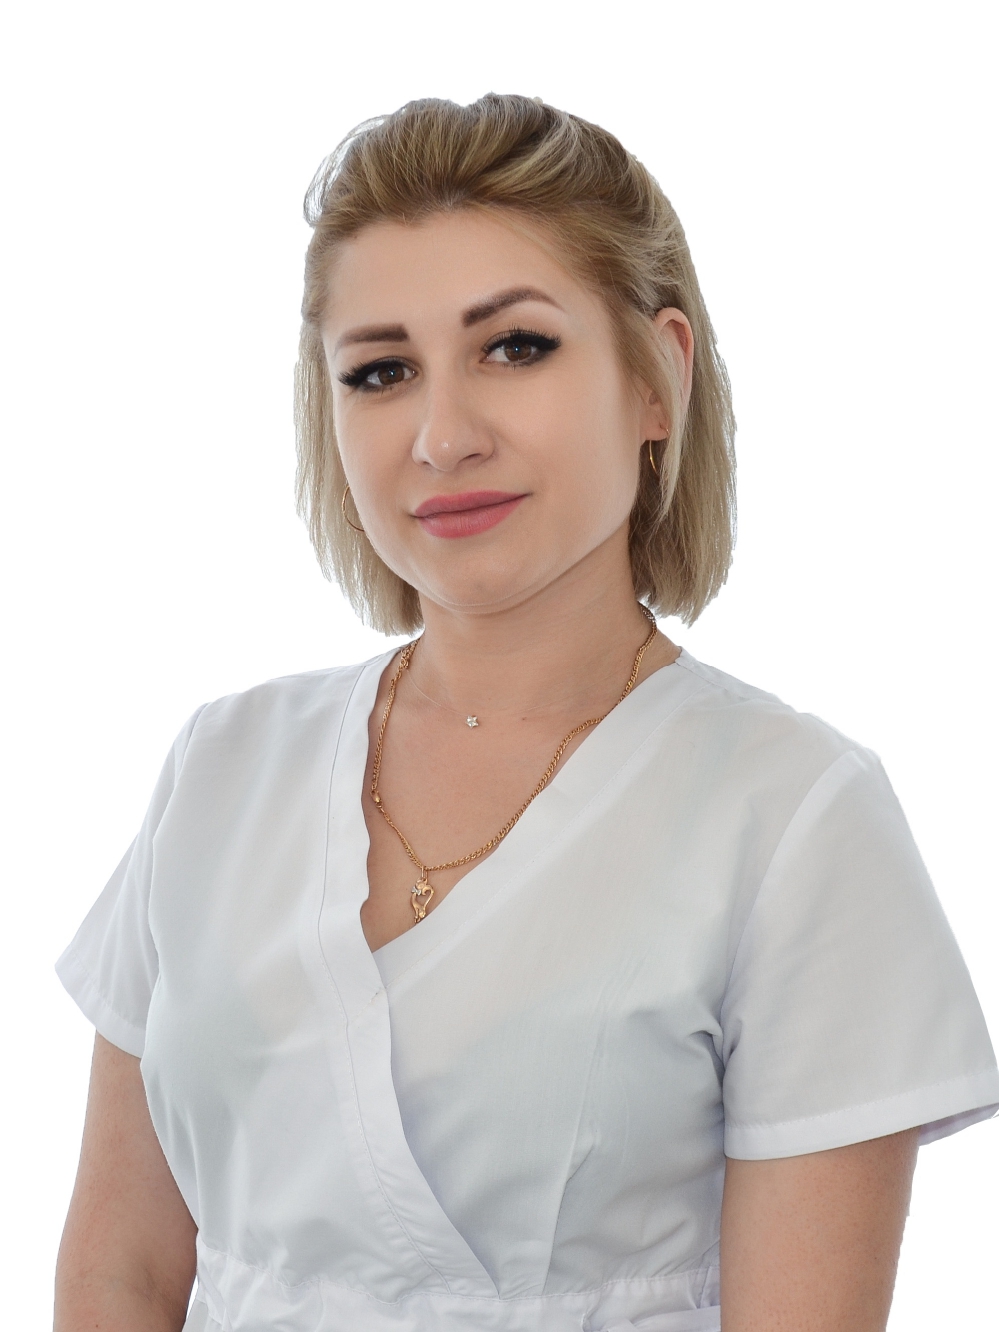 Киселева Елена Николаевна - стоматологическая клиника L70